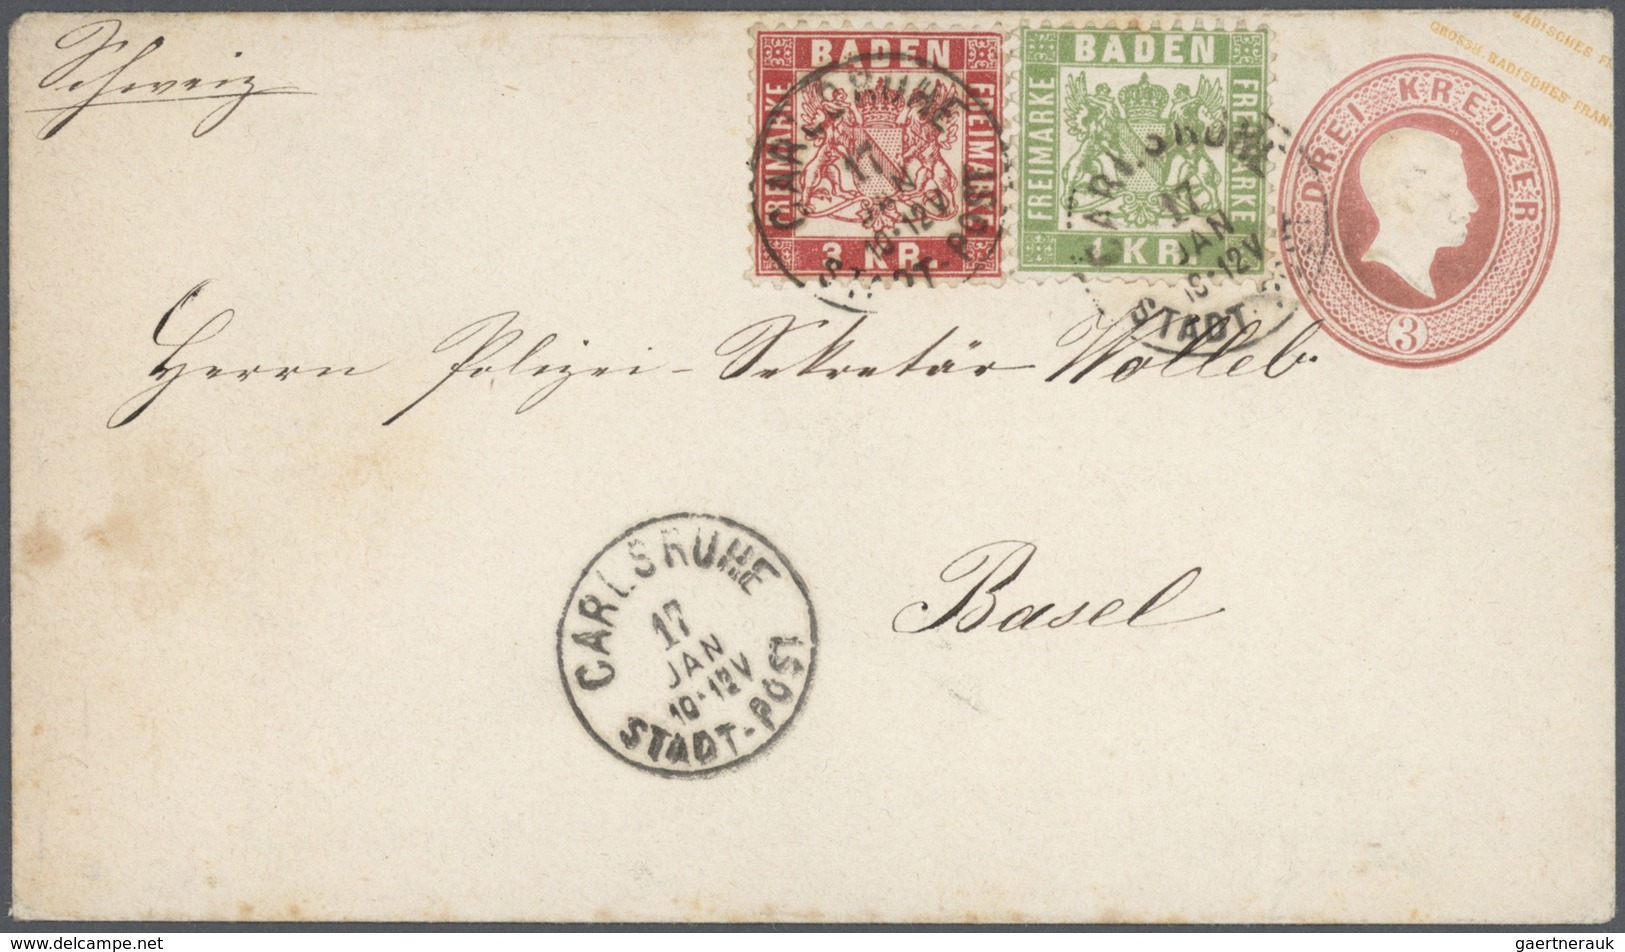 31171 Baden - Marken und Briefe: 1851/1875 (ca.) vielfältige STEMPELSAMMLUNG alphabetisch geordnet von A-Z